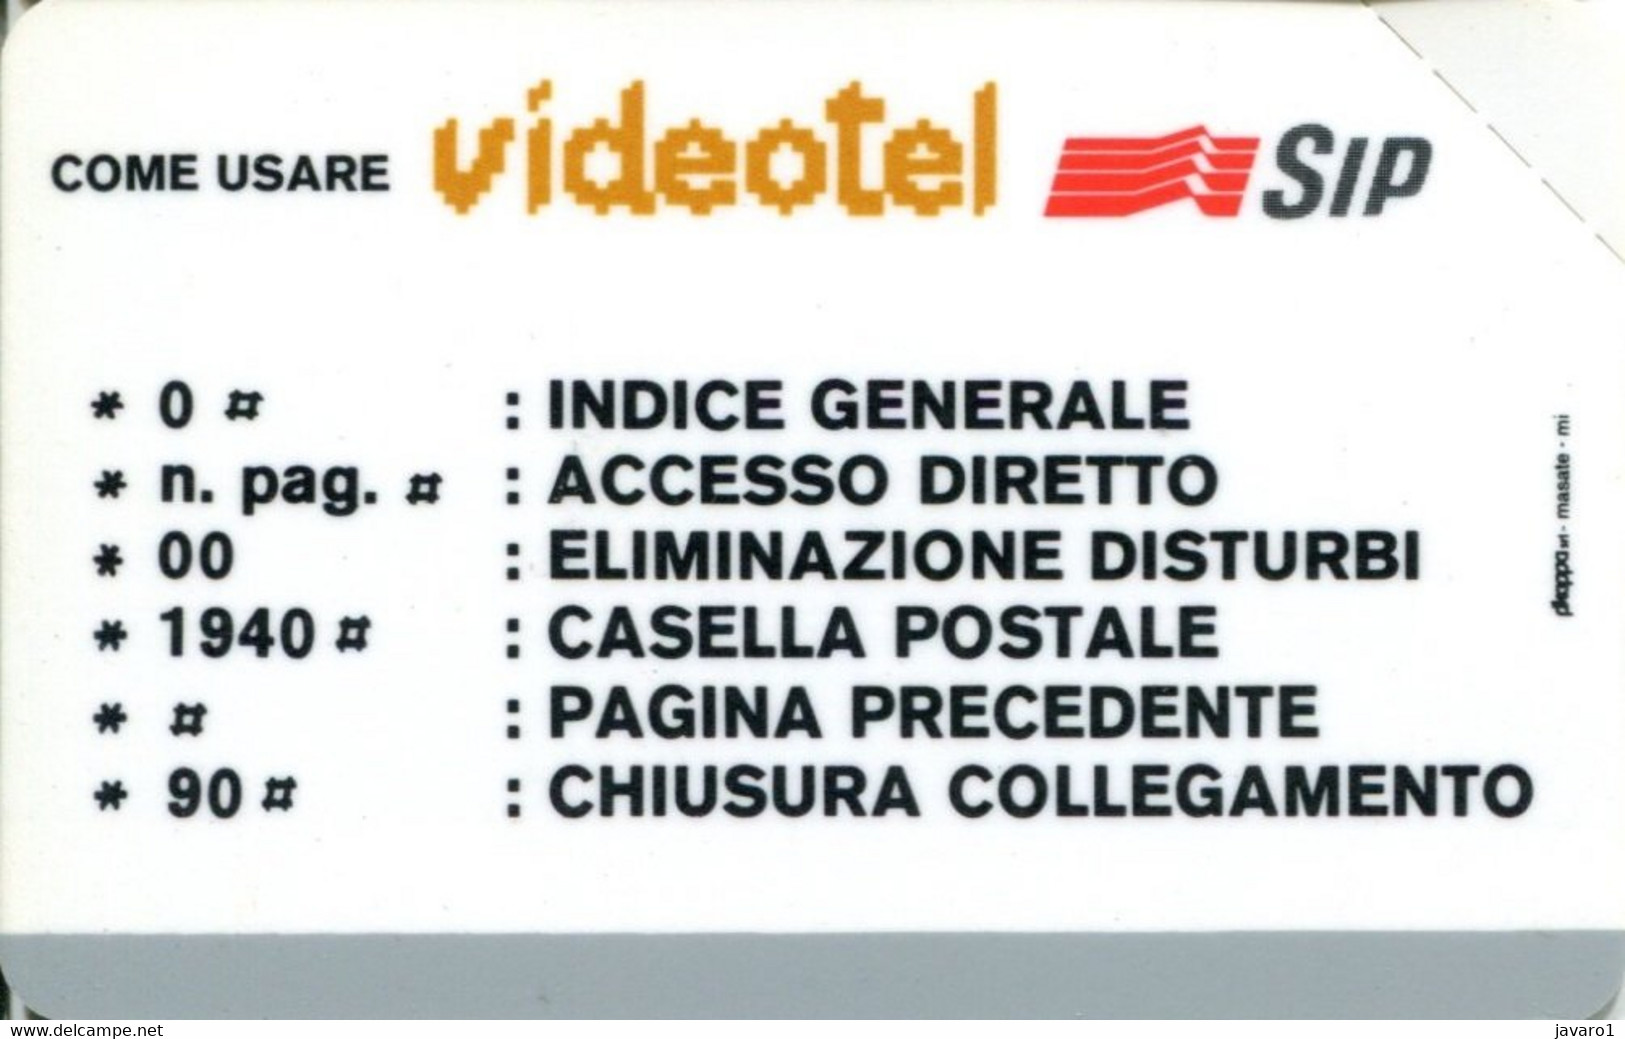 ITALIA : 4009 OMAGGIO VIDEOTEL MINT - Tests & Servizi